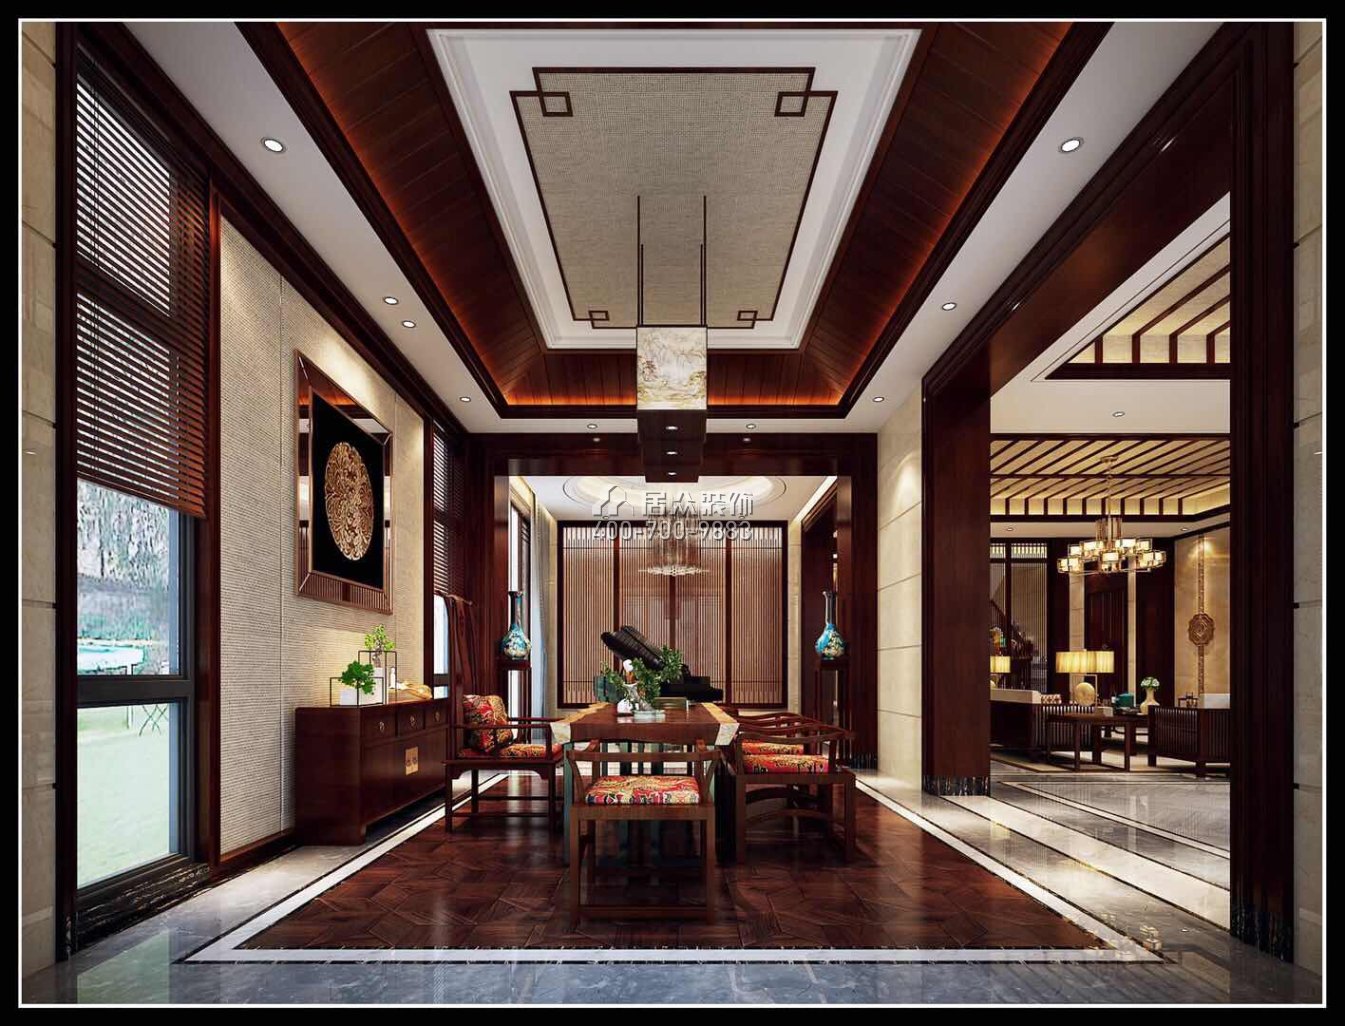 翡翠松山湖800平方米中式风格别墅户型茶室装修效果图